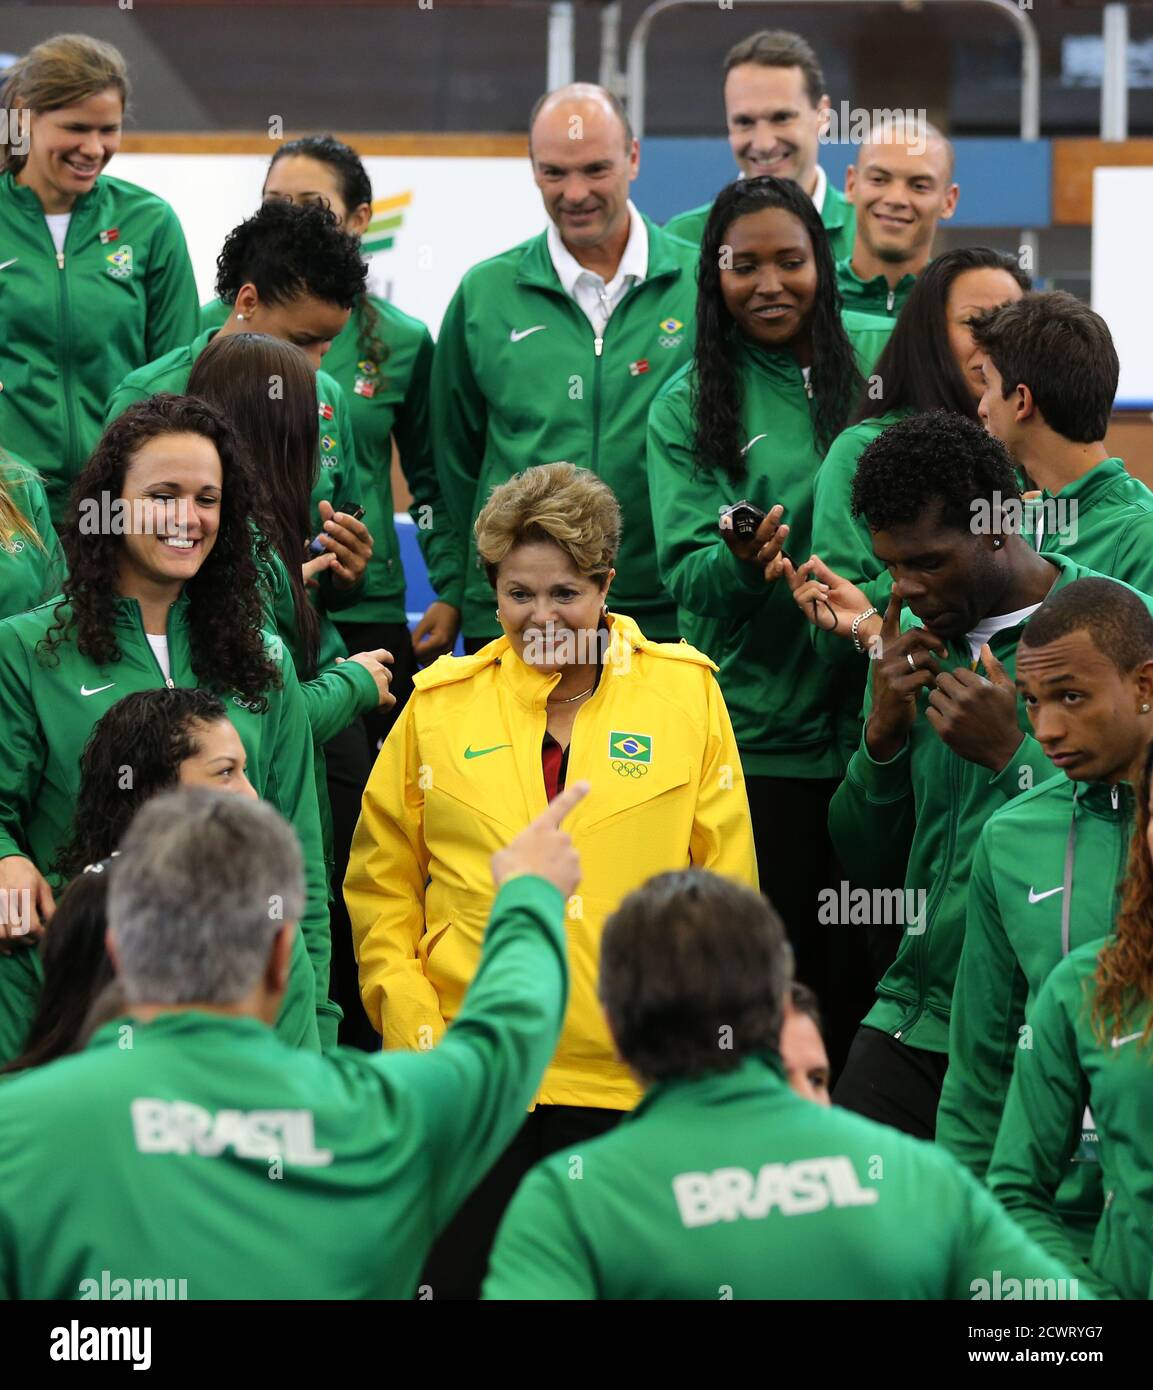 La présidente brésilienne Dilma Rousseff (C) présente une photo avec les athlètes olympiques brésiliens au centre sportif Crystal Palace de Londres, le 27 juillet 2012. Rousseff est en visite pour assister à la cérémonie d'ouverture des Jeux Olympiques de Londres 2012. REUTERS/Sergio Moraes (GRANDE-BRETAGNE - Tags: SPORT JEUX OLYMPIQUES POLITIQUE) Banque D'Images